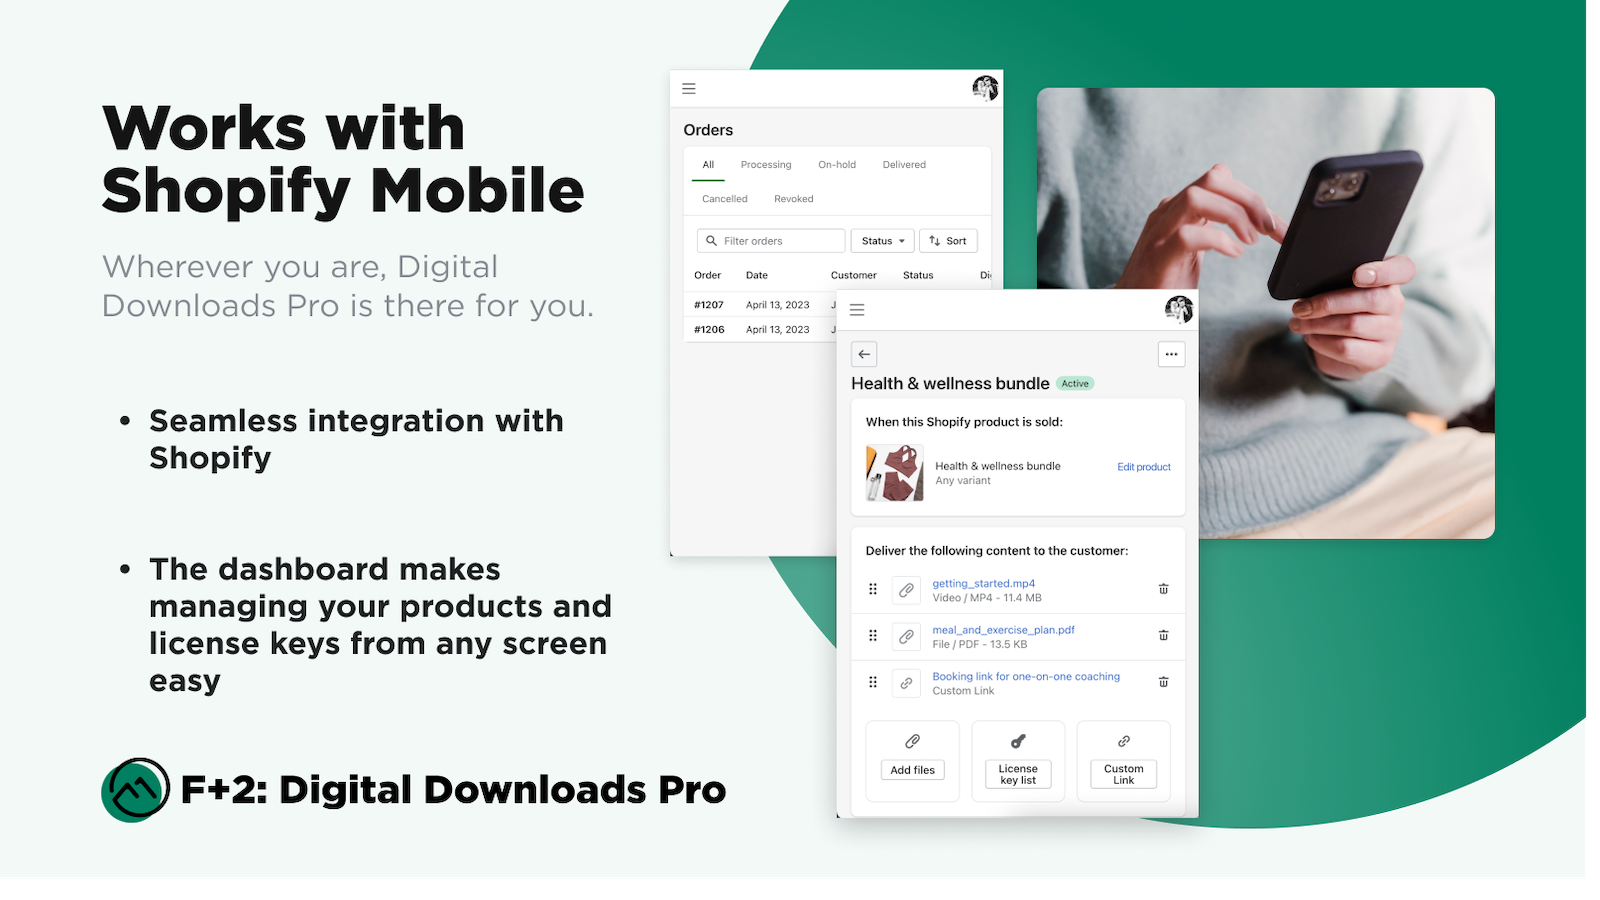 Verwalten Sie Ihre digitalen Downloads und Produkte auf Shopify Mobile